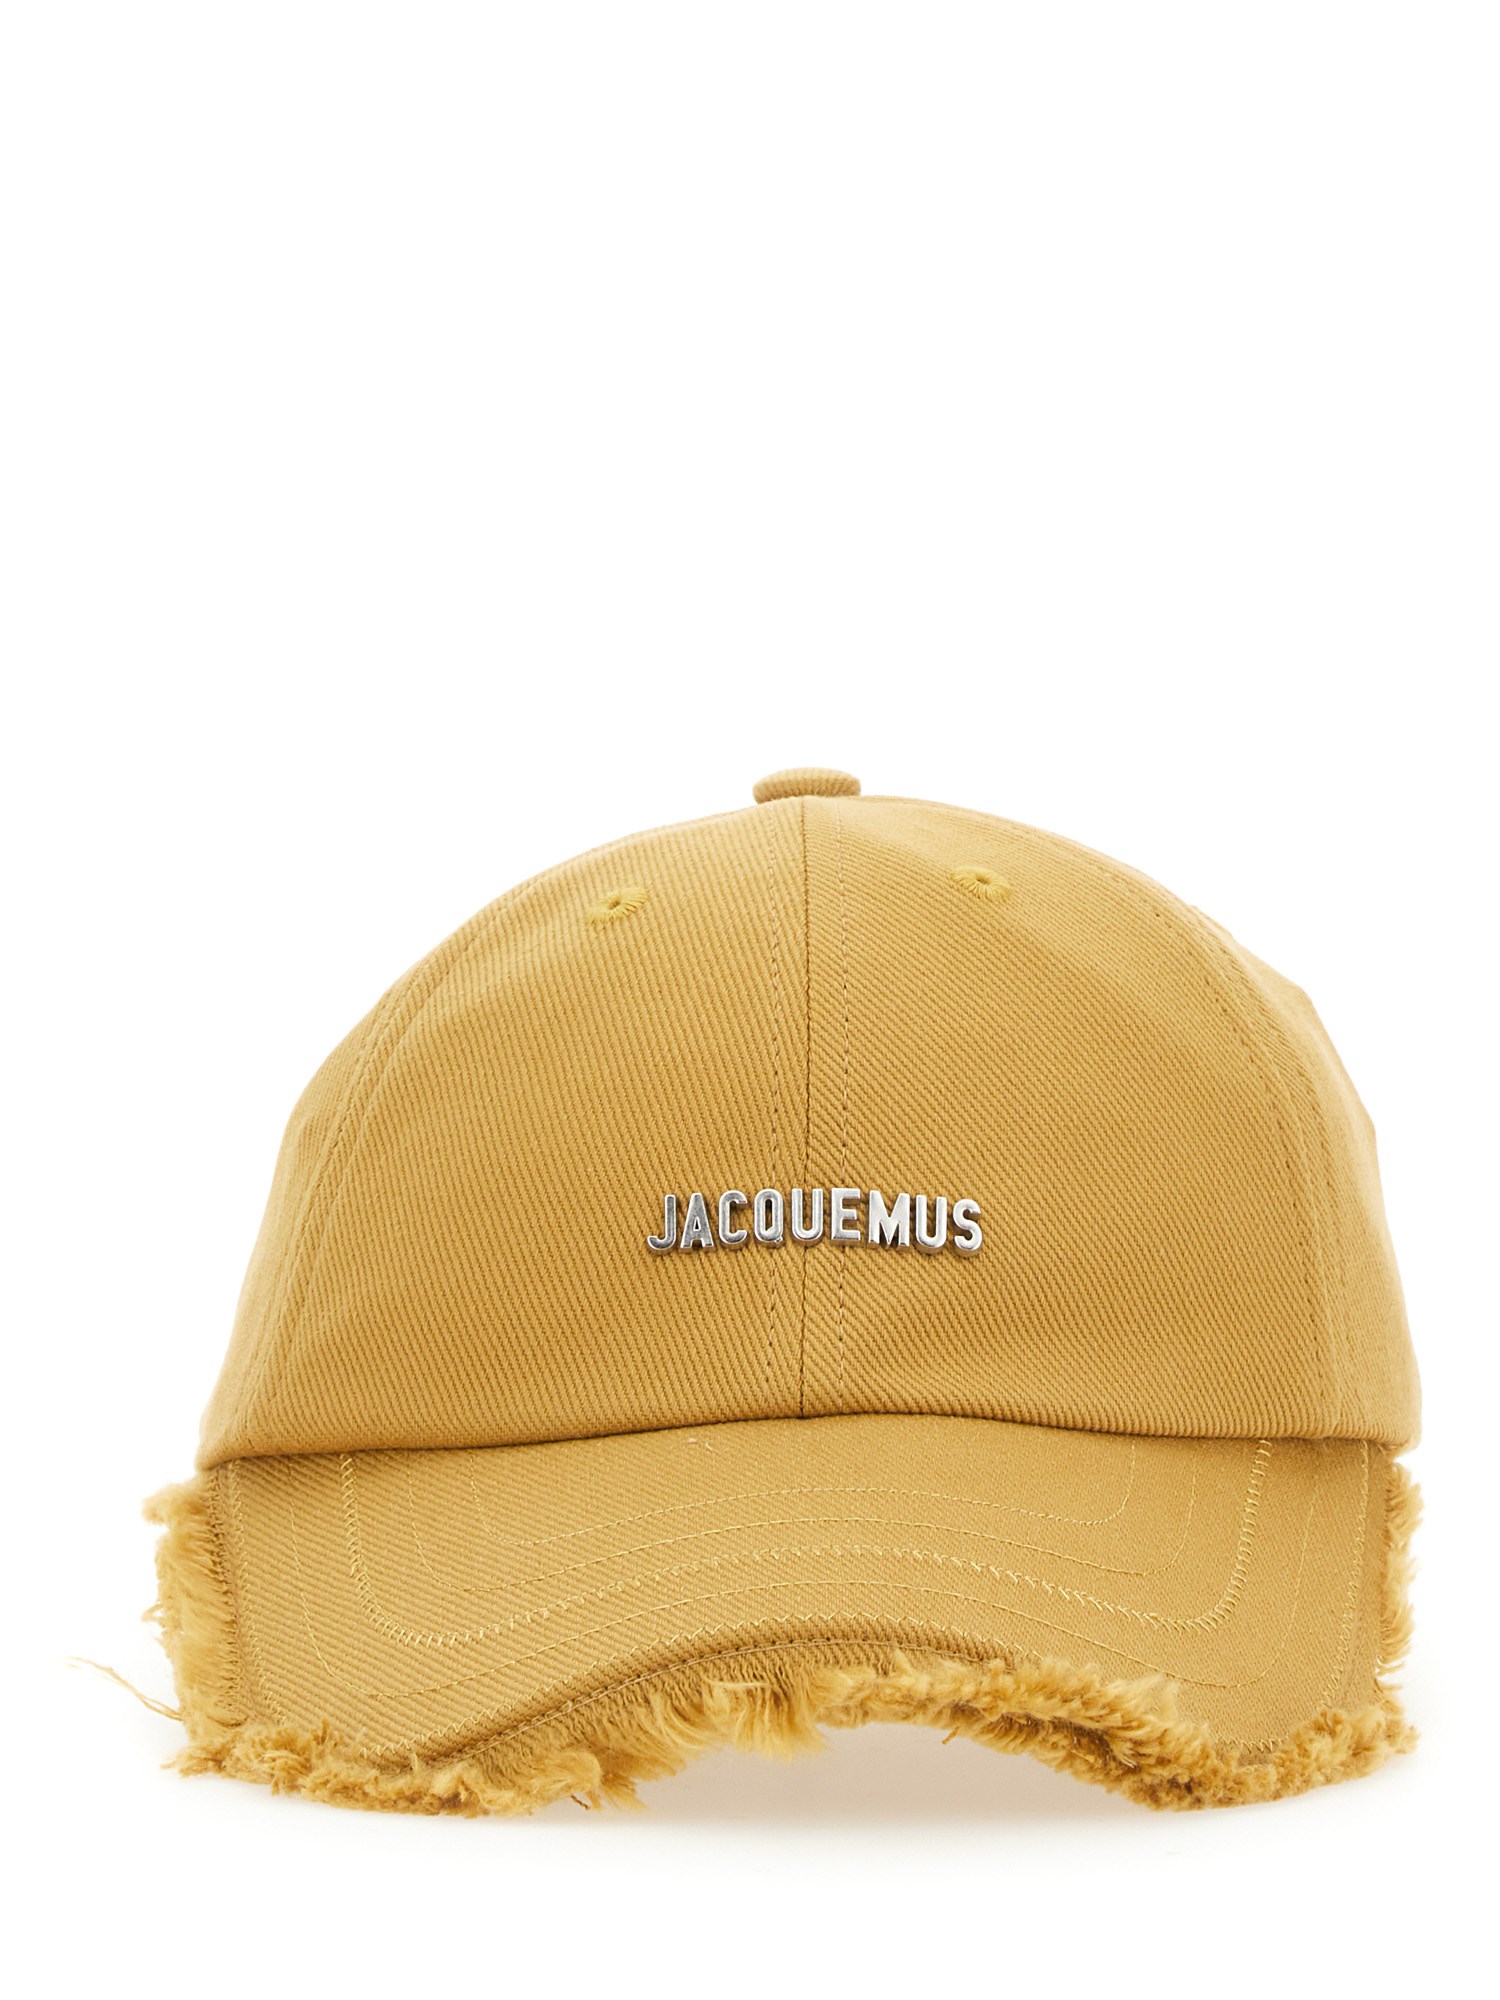 Jacquemus jacquemus le casquette artichaut hat